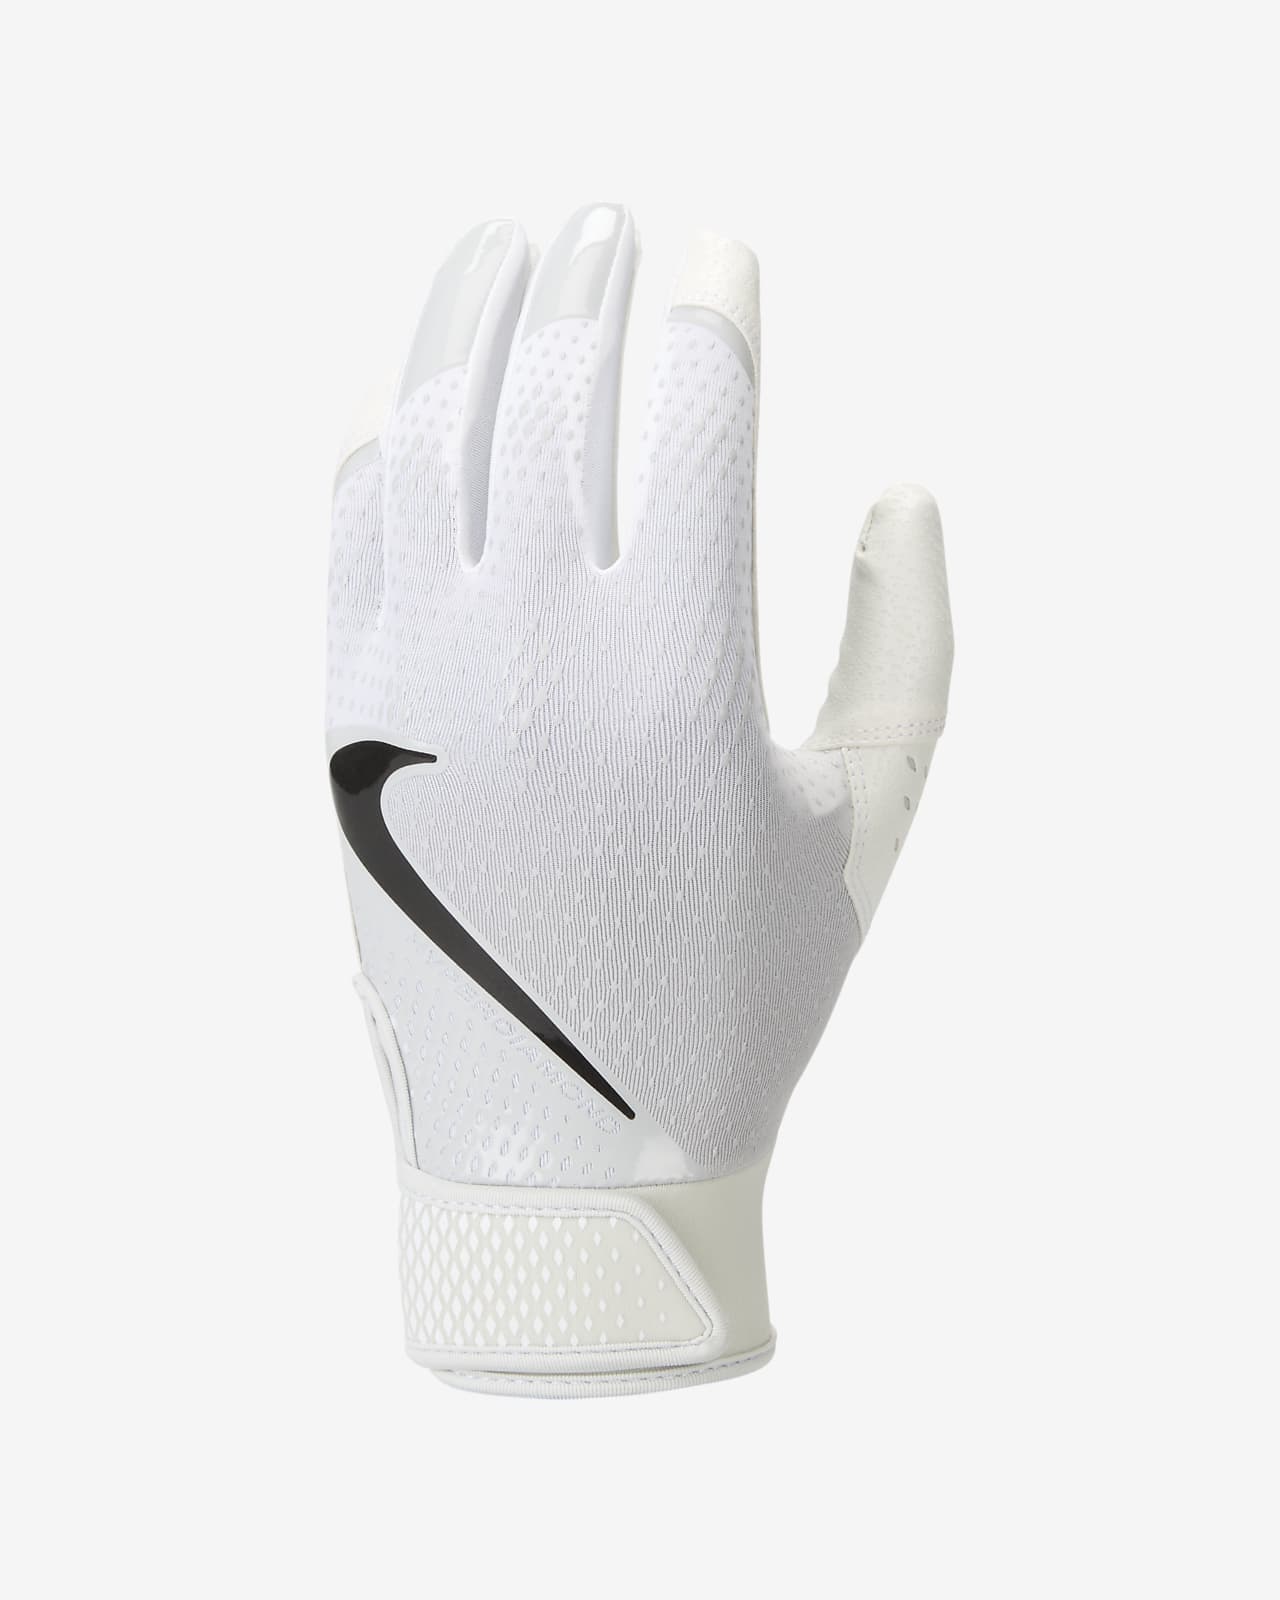 Nike Hyperdiamond Women's Softball Gloves